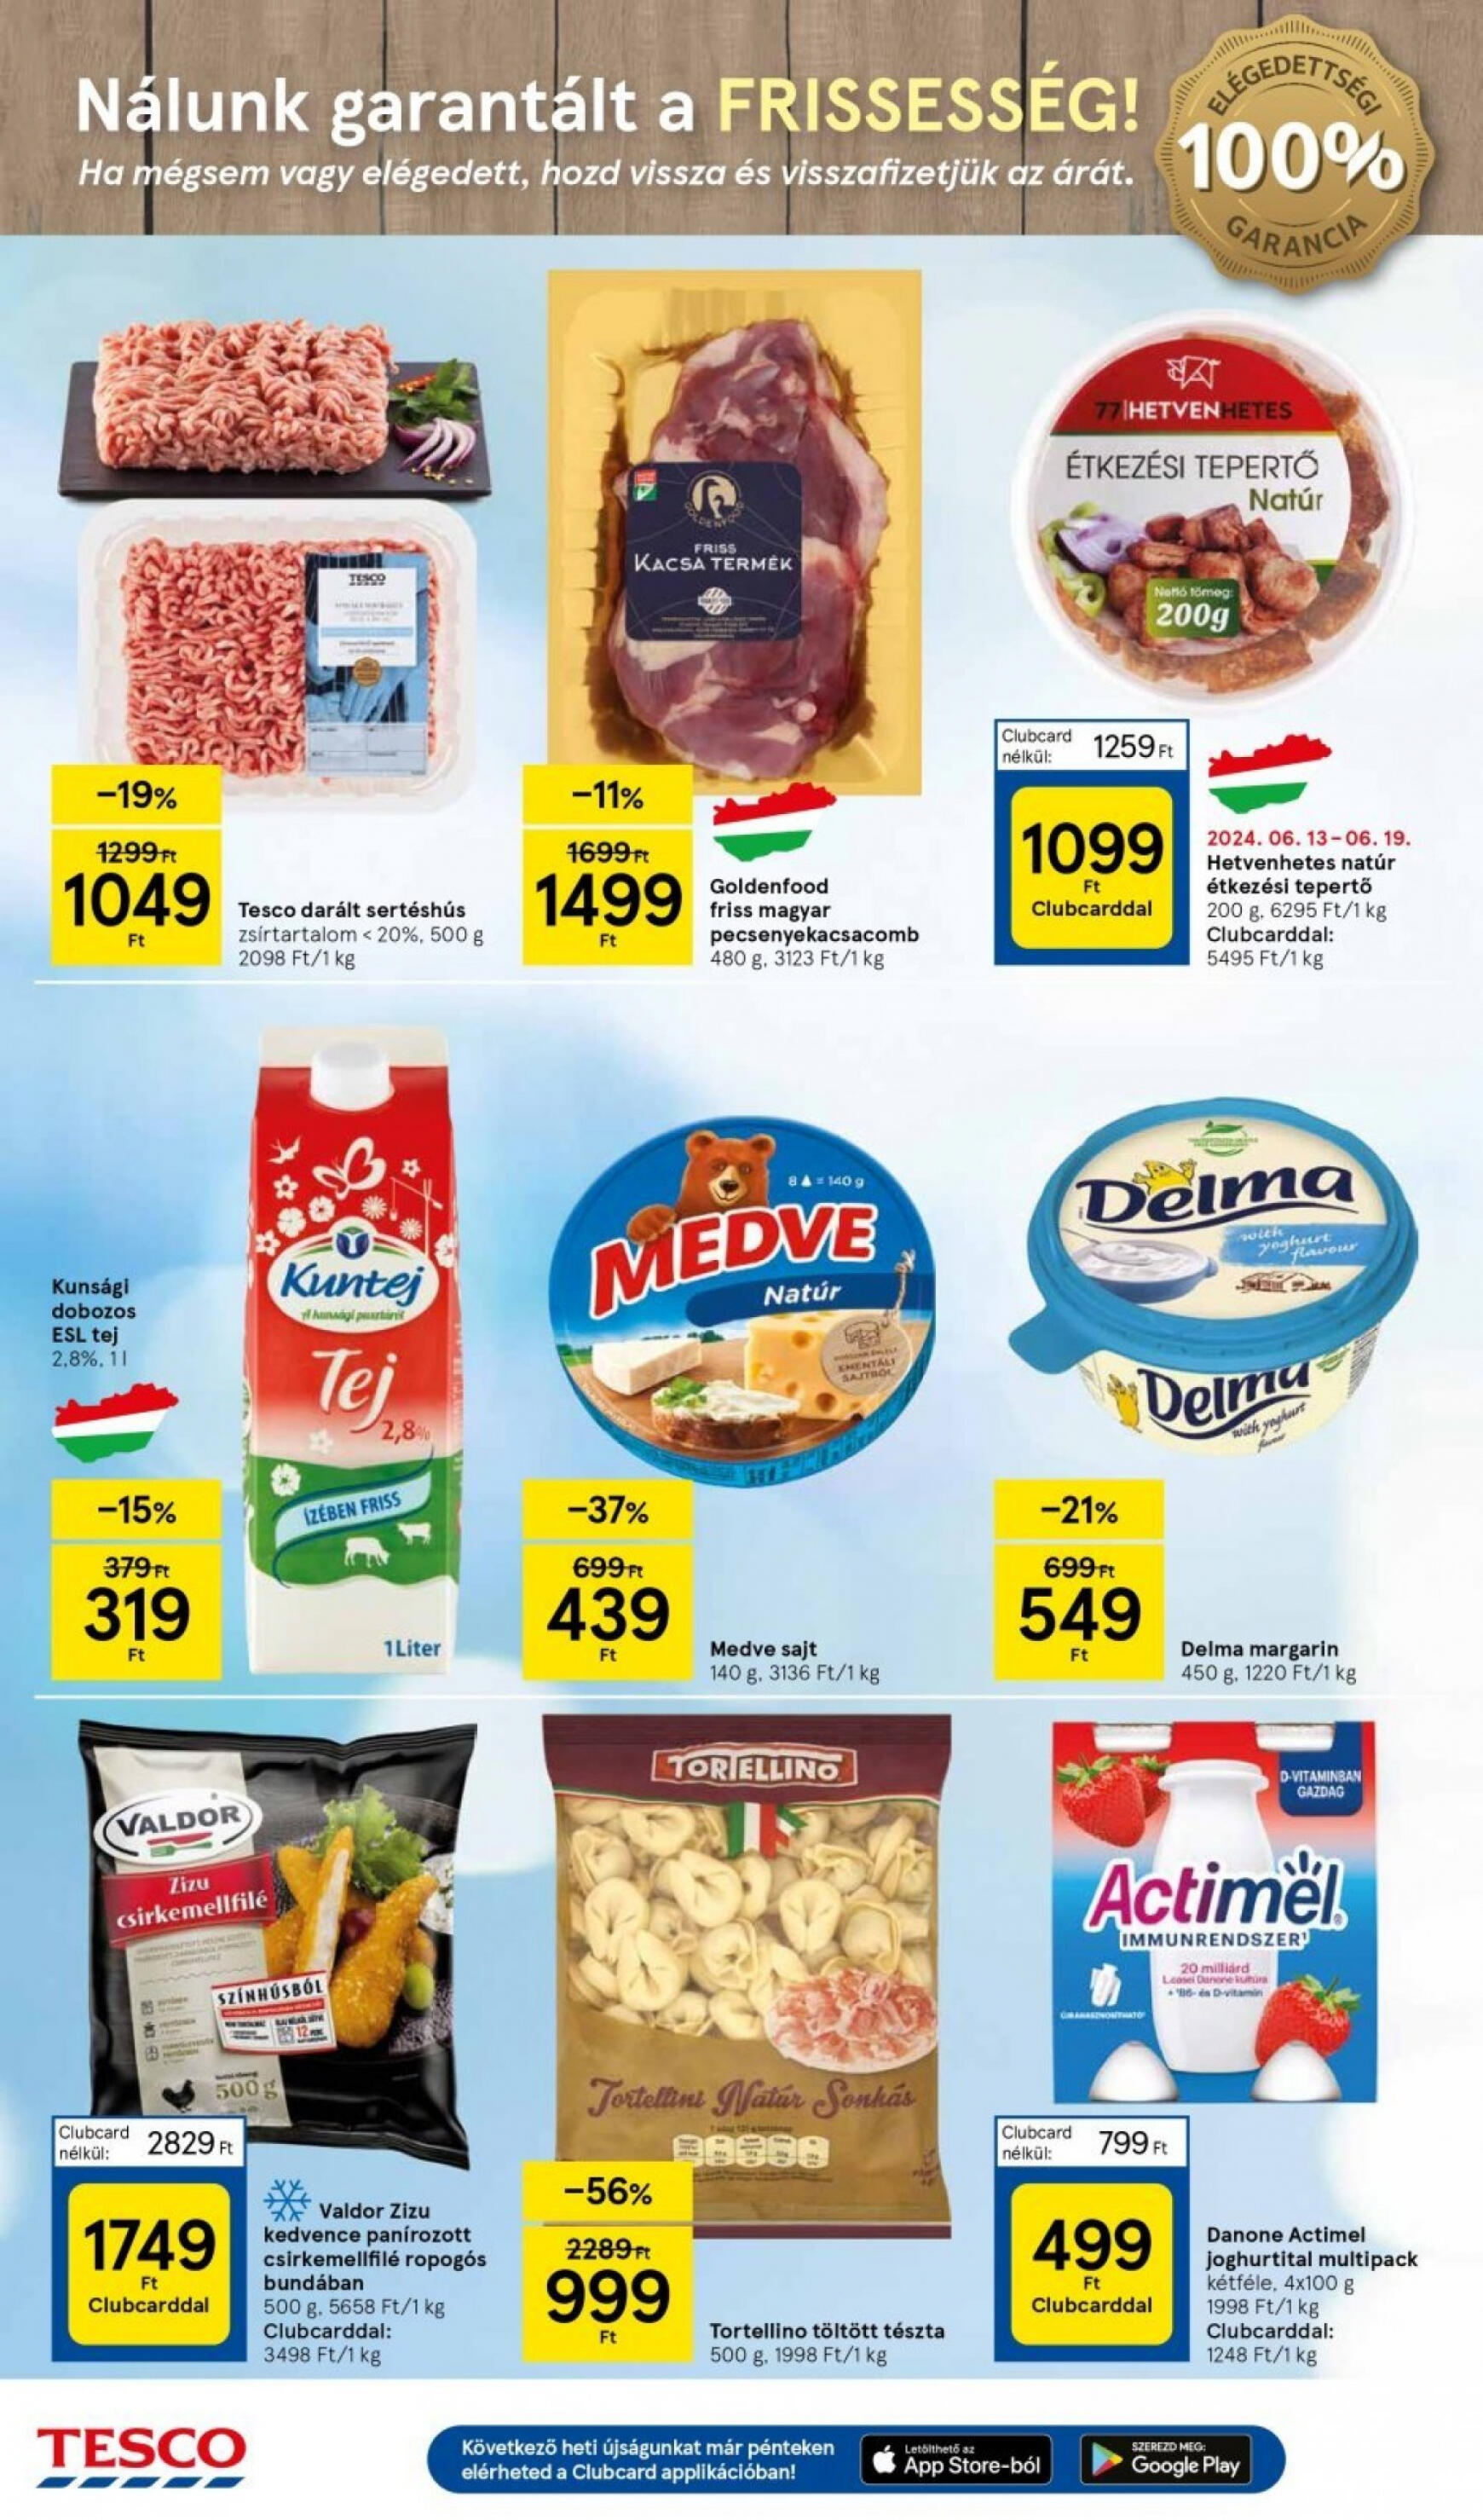 tesco - Aktuális újság Tesco szupermarket 06.13. - 06.19. - page: 4